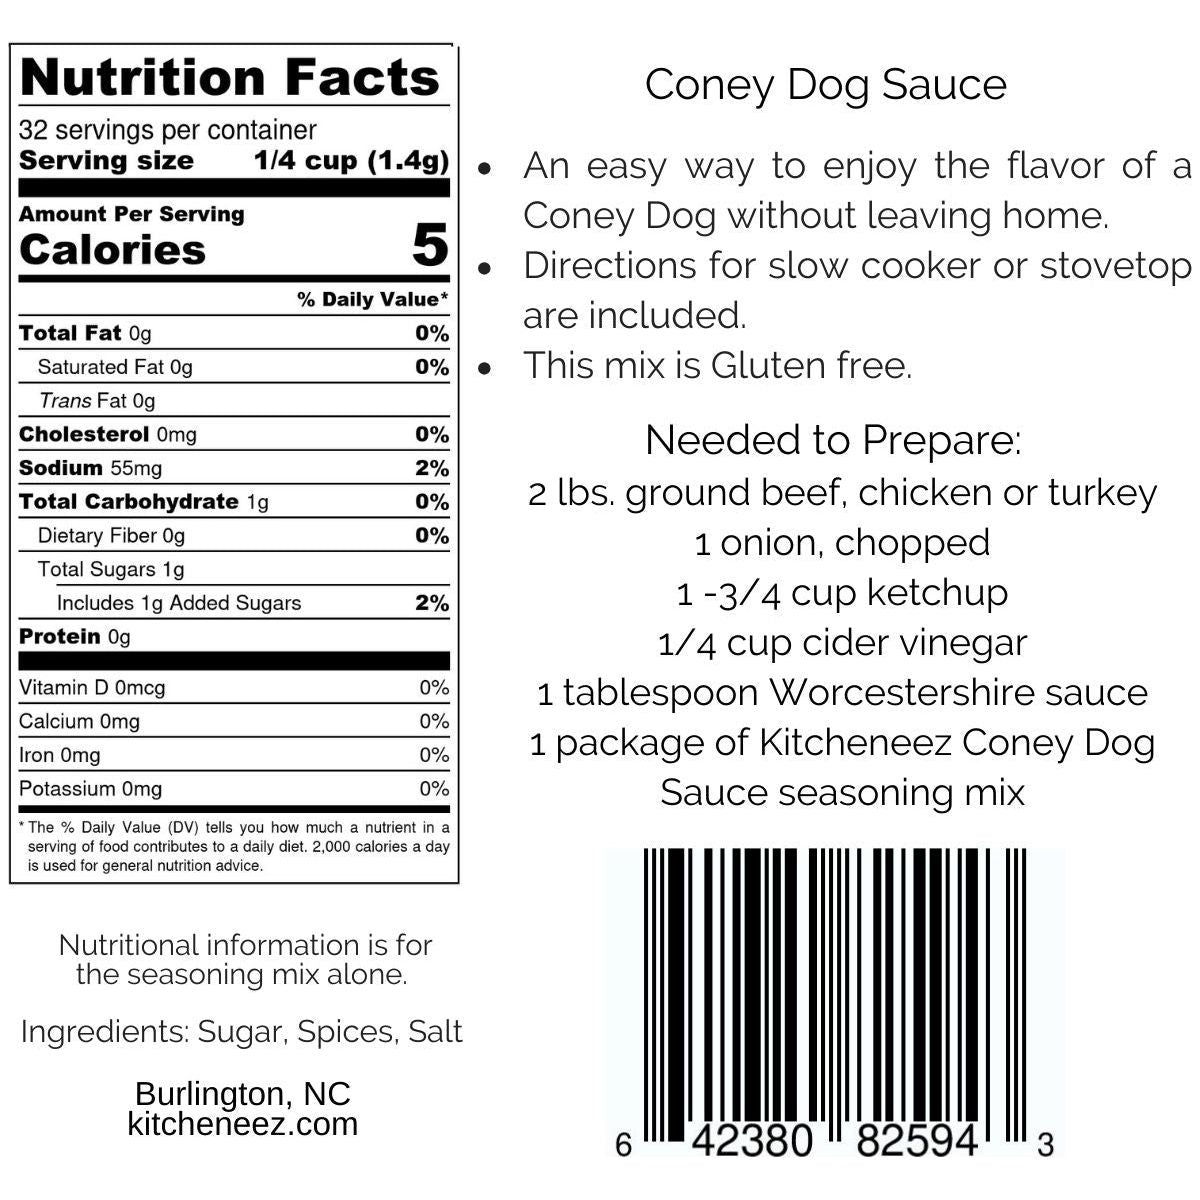 Coney Dog Sauce seasoning - Kitcheneez Mixes & More!